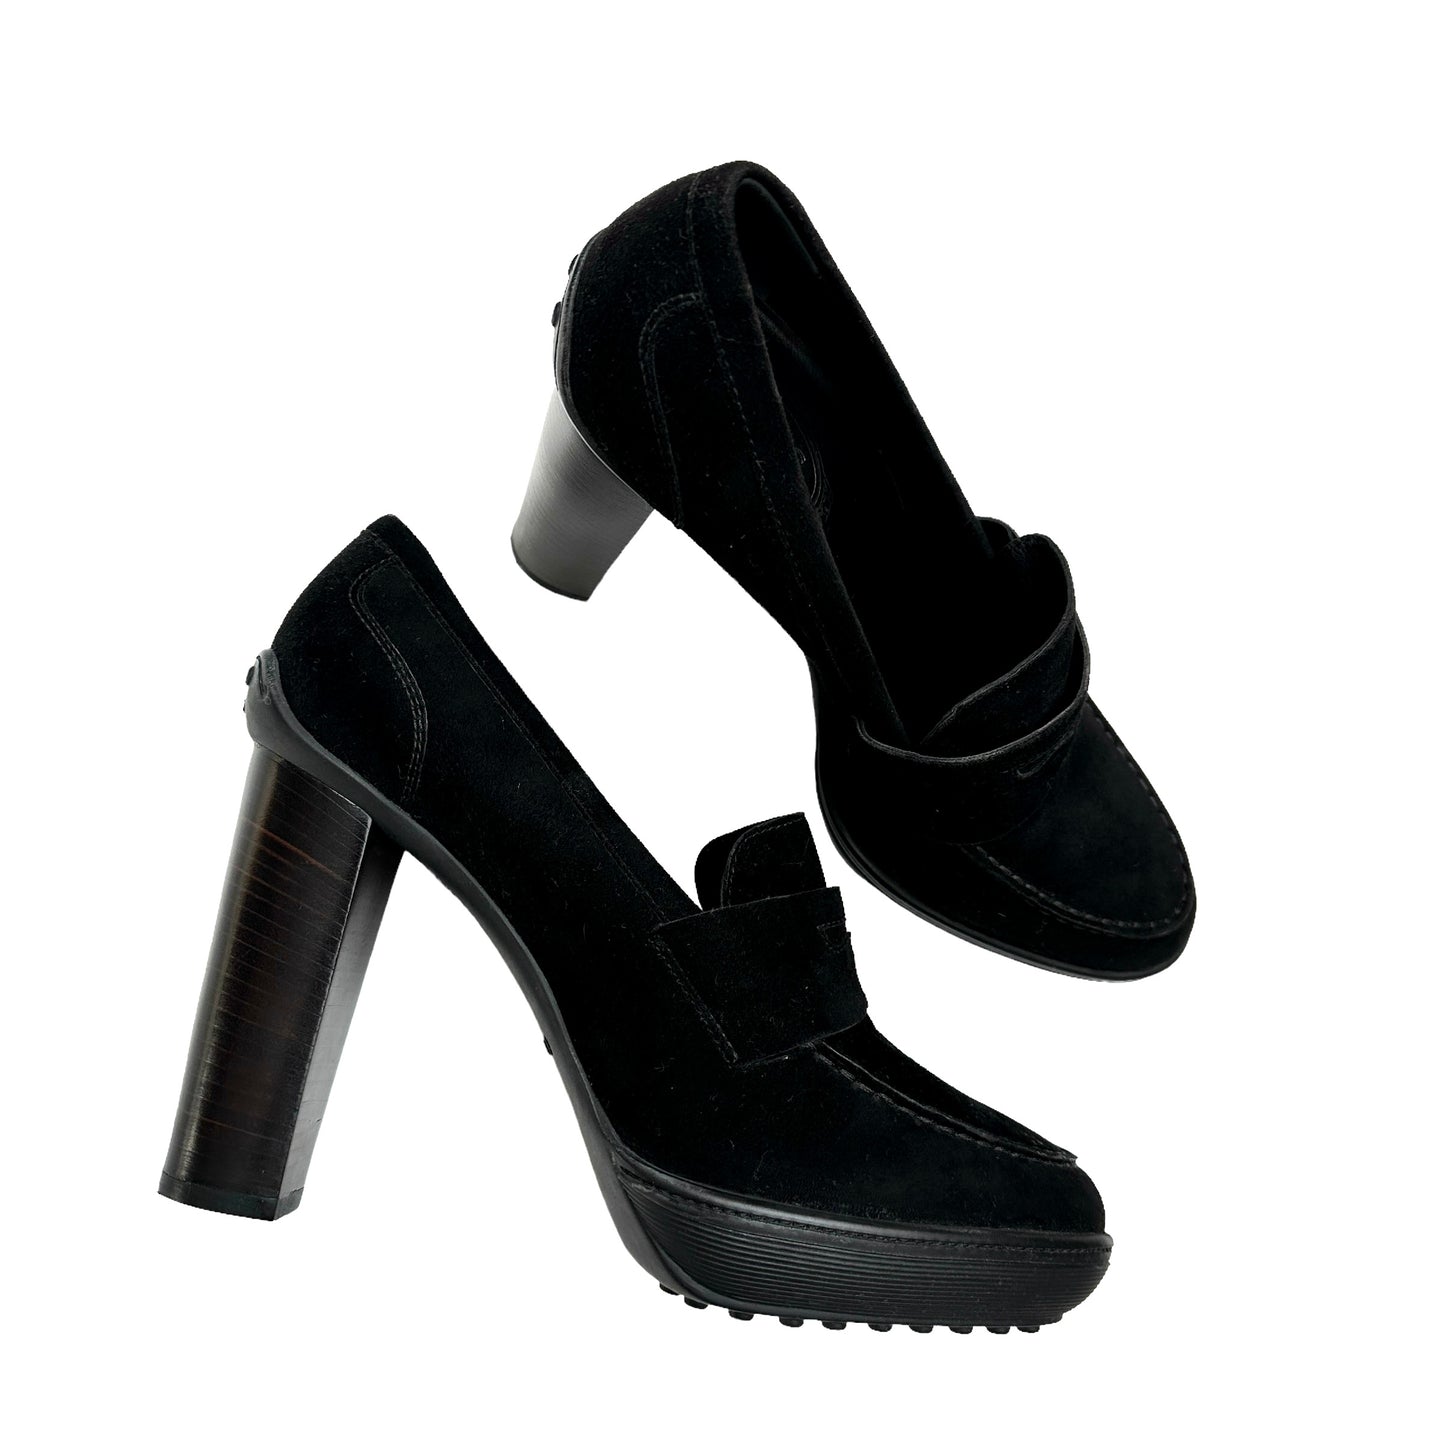 Black Suede High Heels - 10.5